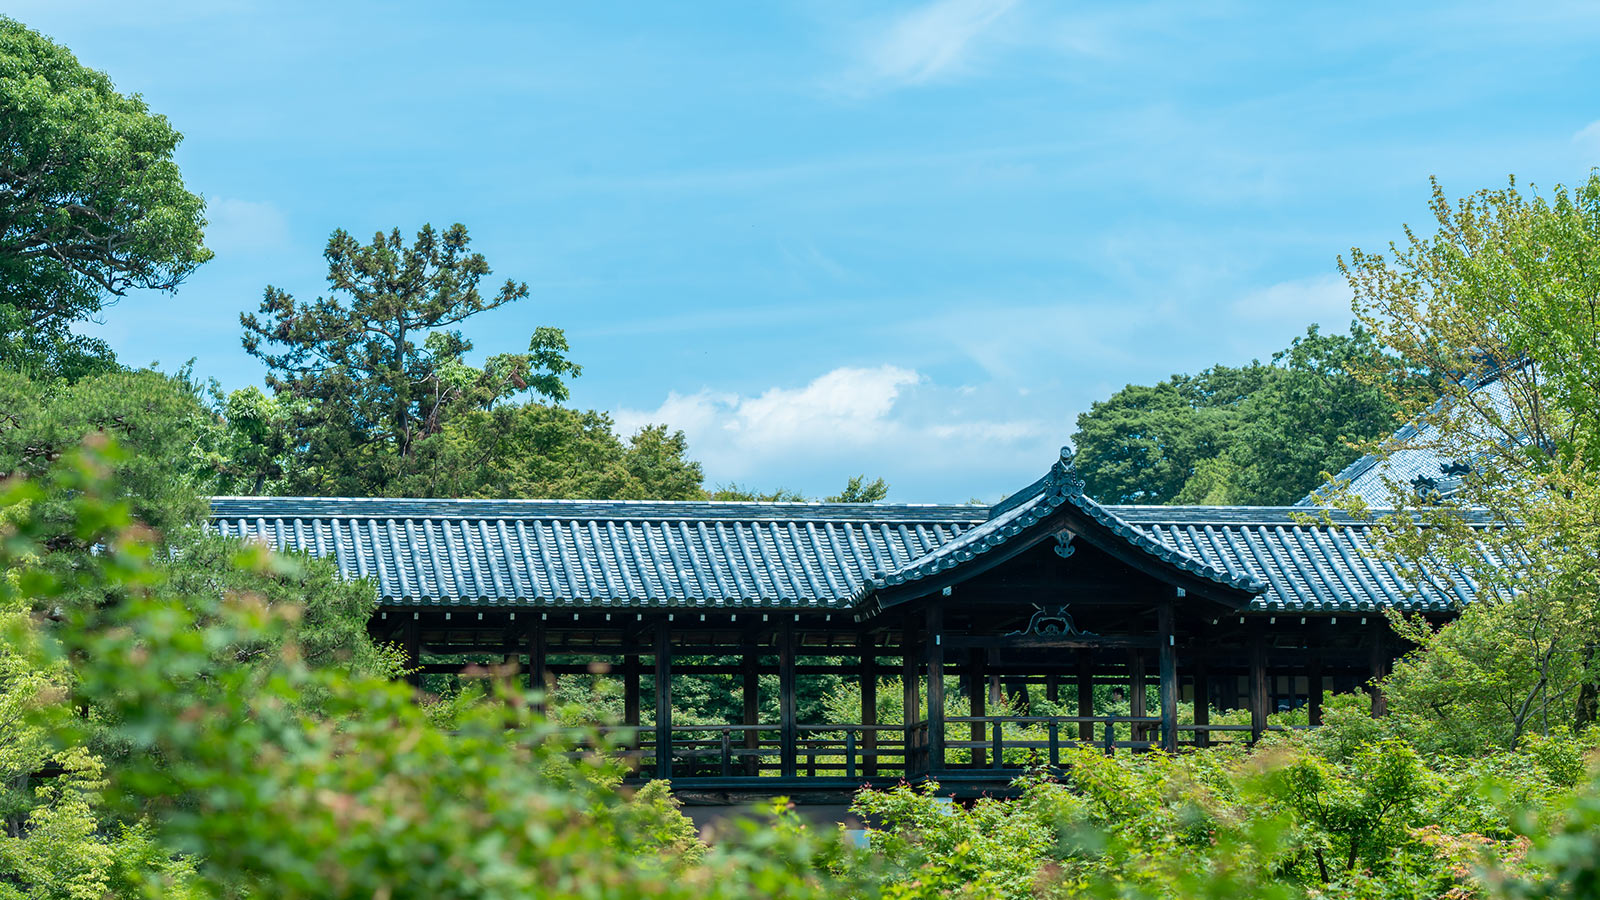 東福寺の臥雲橋からの眺め